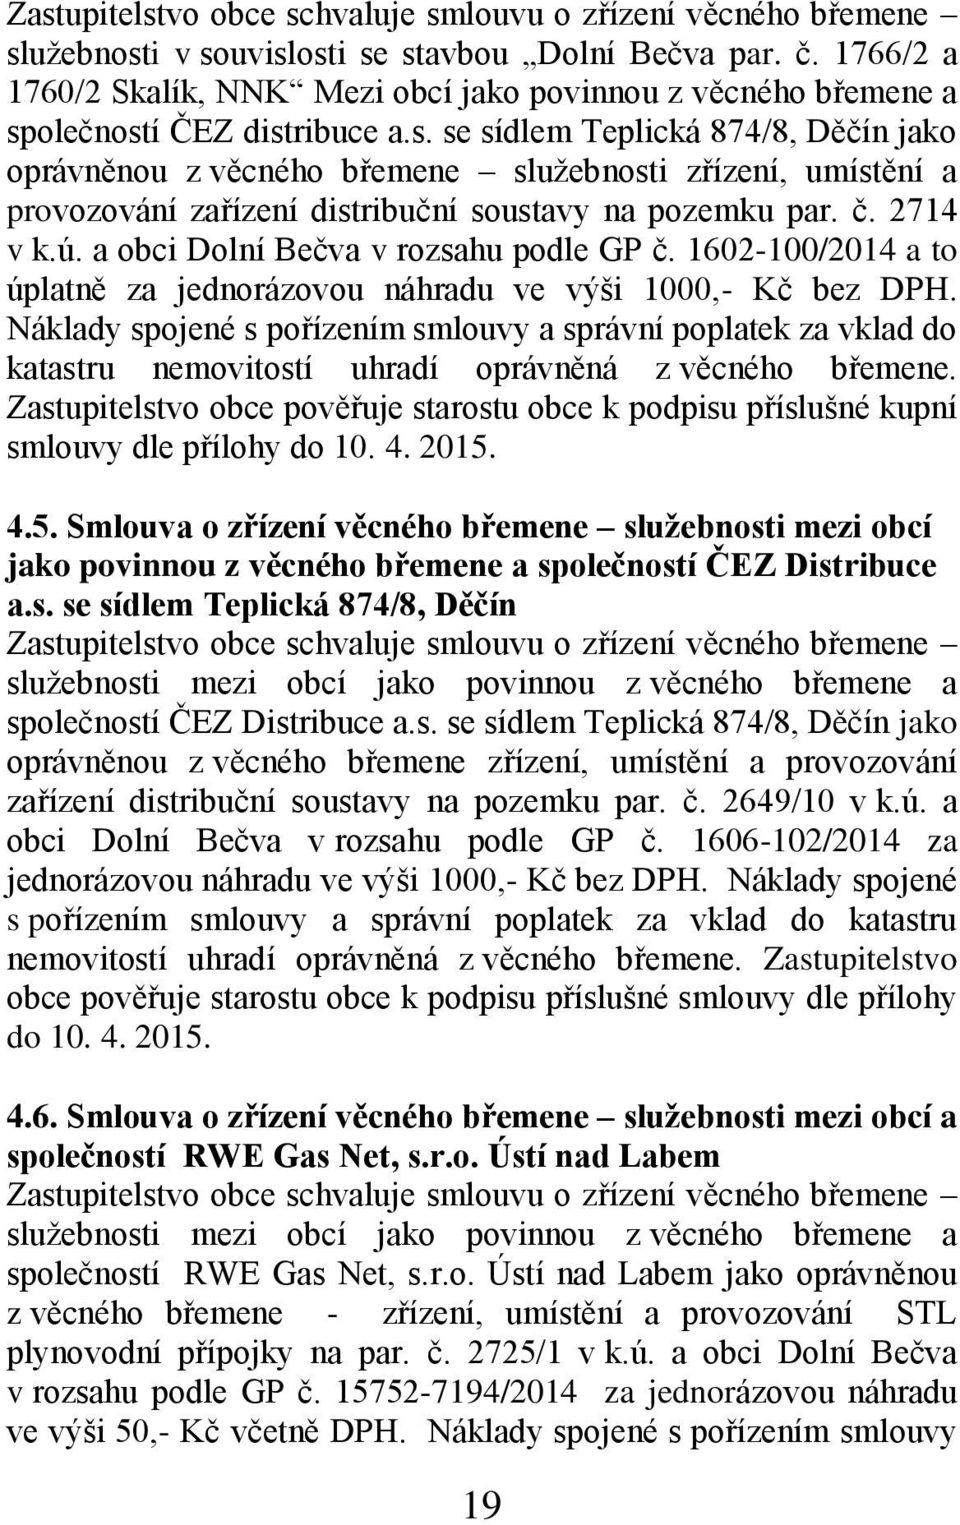 olečností ČEZ distribuce a.s. se sídlem Teplická 874/8, Děčín jako oprávněnou z věcného břemene služebnosti zřízení, umístění a provozování zařízení distribuční soustavy na pozemku par. č. 2714 v k.ú.